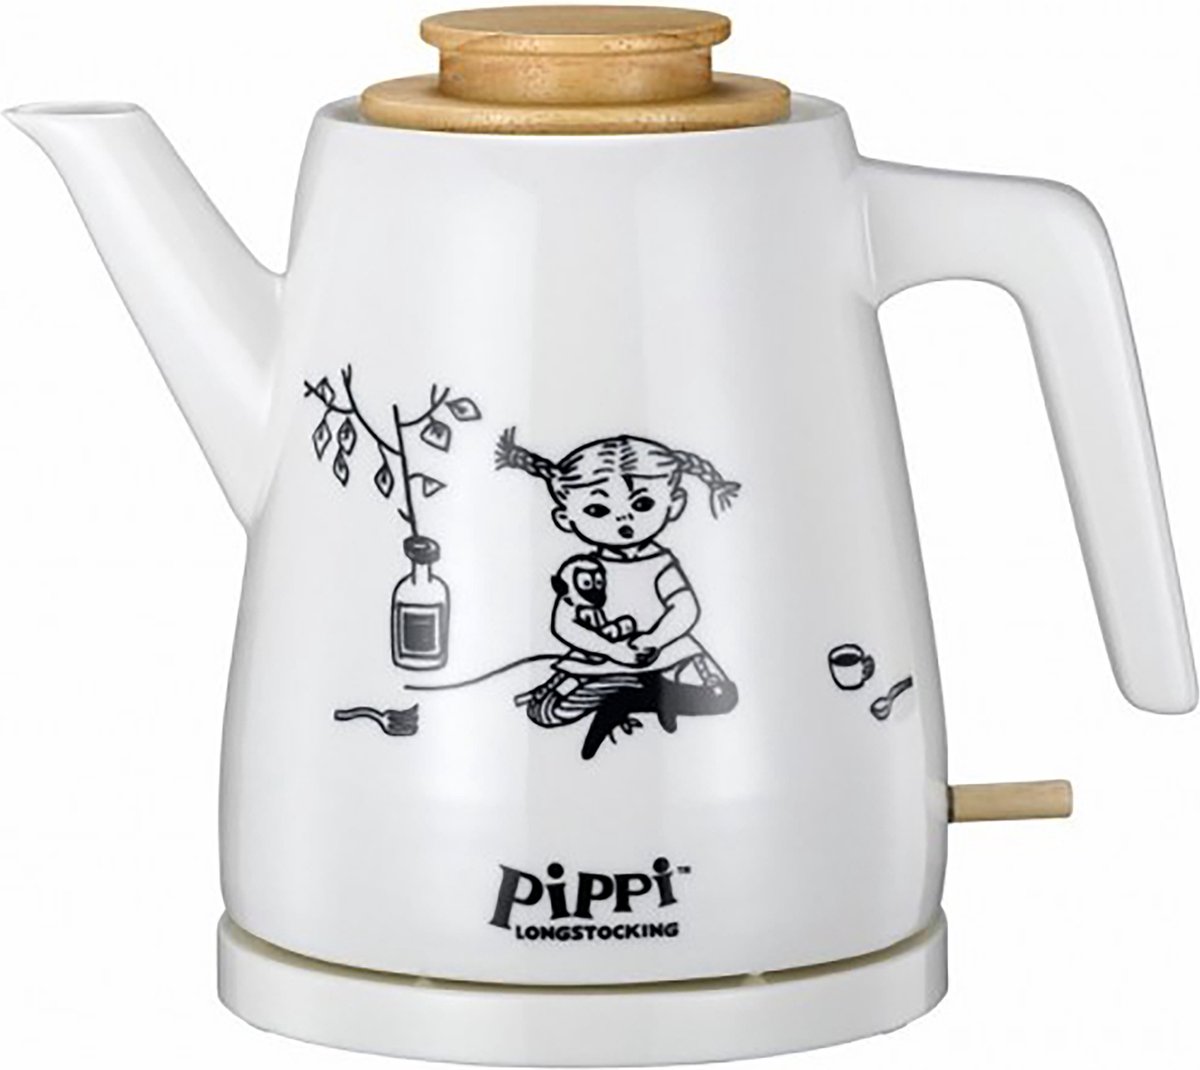 Pippi 20130003 - Bouilloire céramique Fifi Brindacier - 1,2 Litre